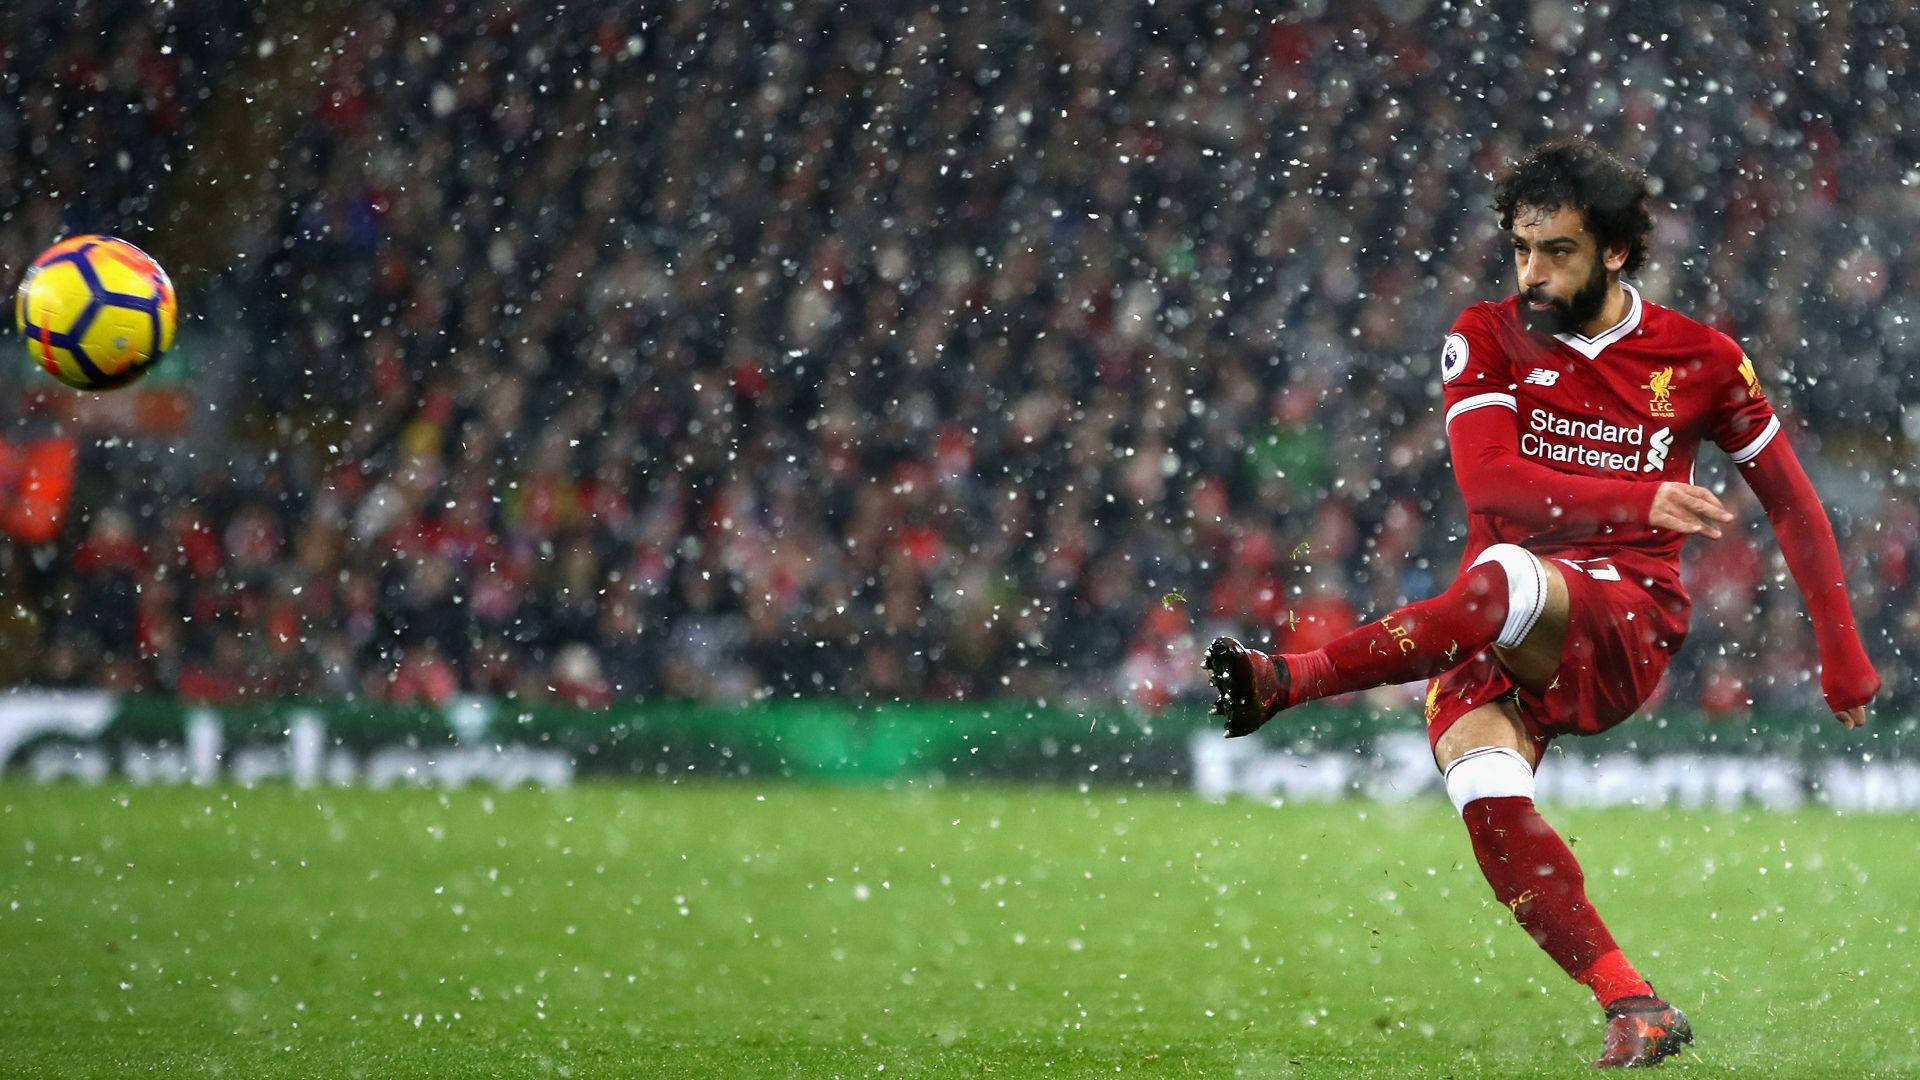 Huyền thoại Liverpool Mo Salah  Vững bước trên con đường trở thành huyền  thoại Liverpool  VTVVN